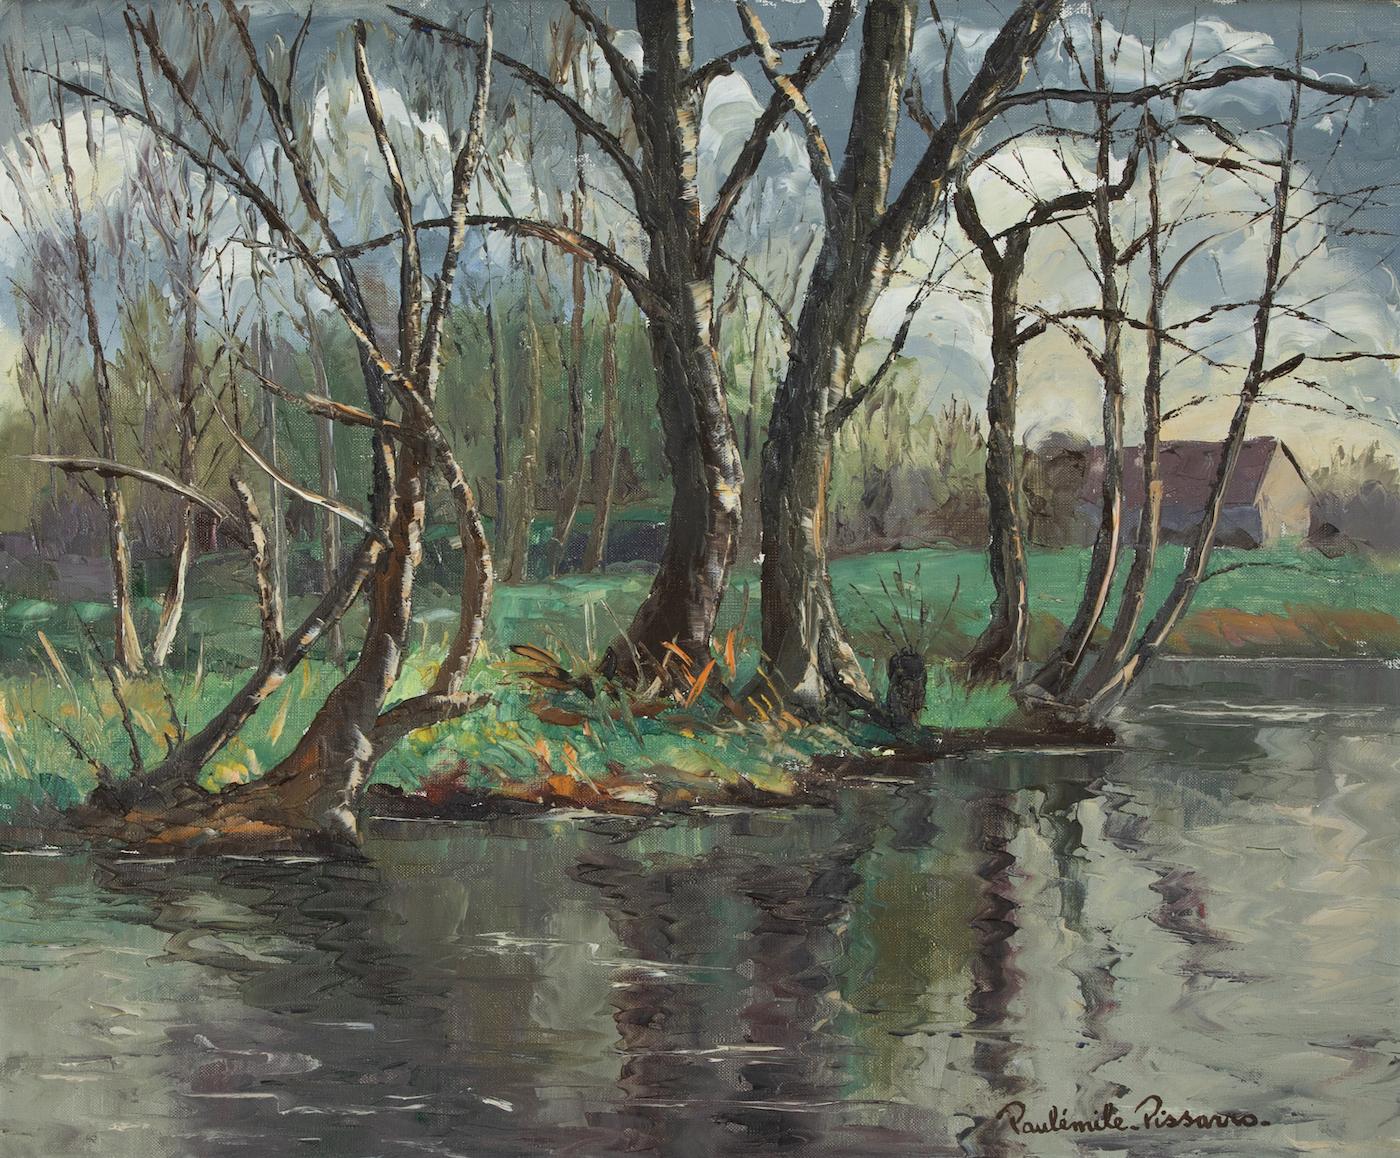 Paul Emile Pissarro Figurative Painting - Les Iles à Cantepie by Paulémile Pissarro - River scene painting